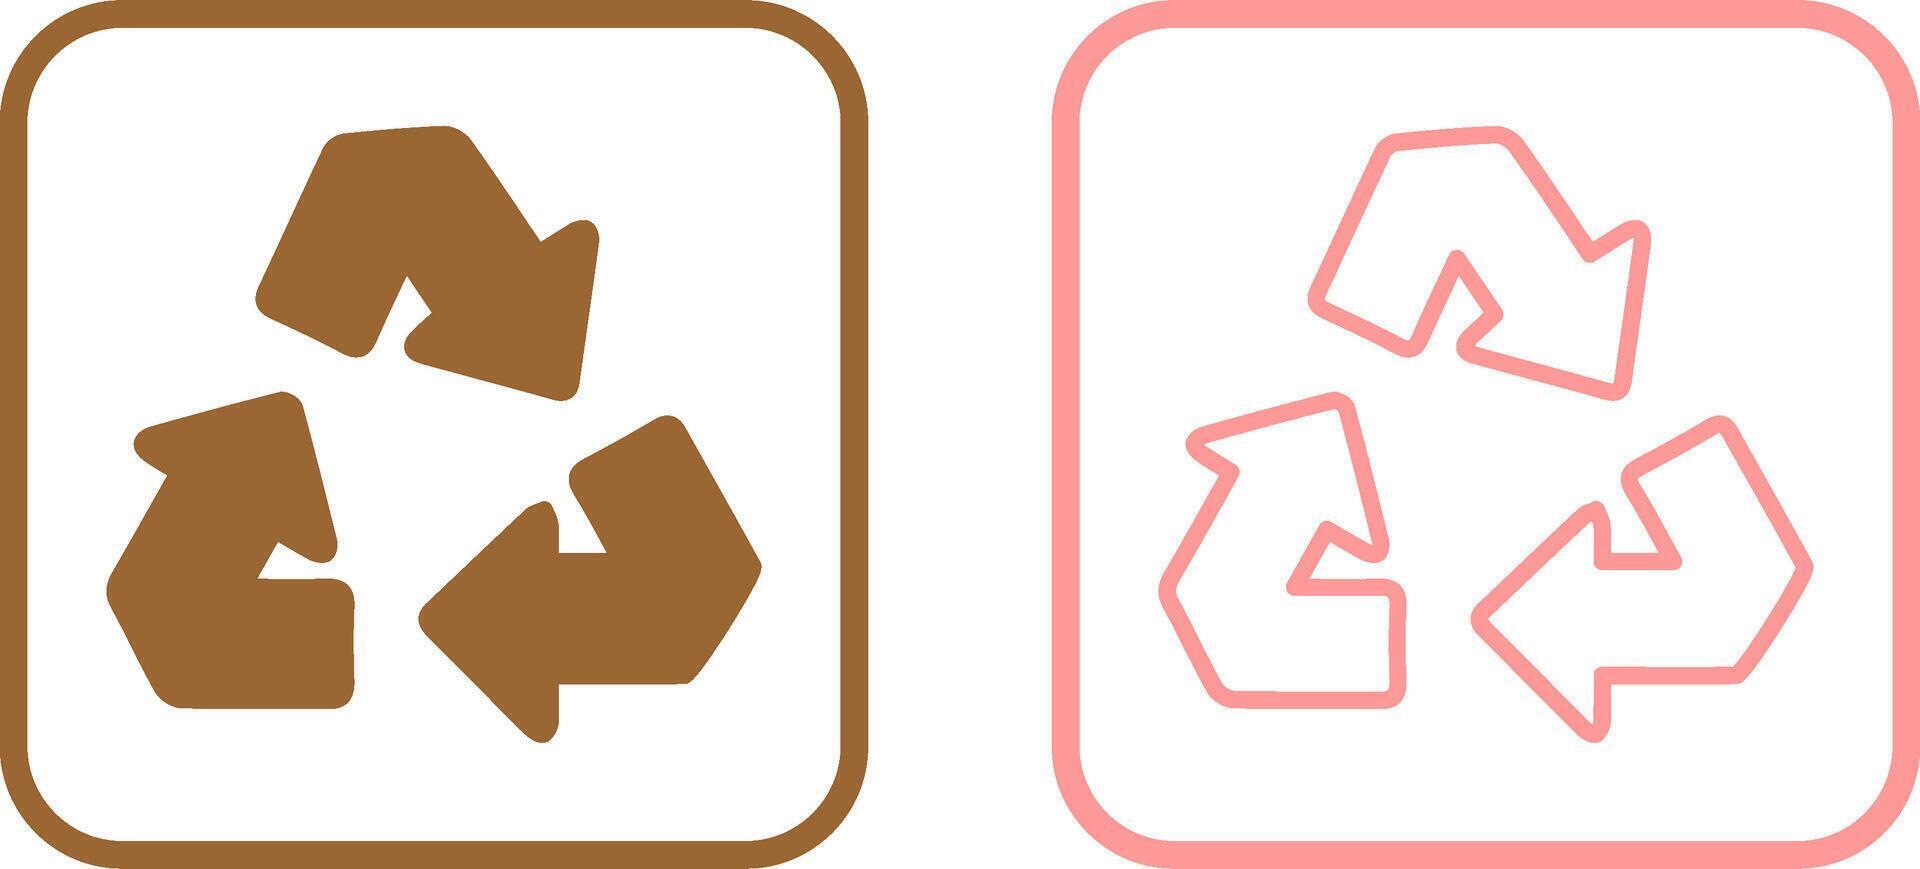 icono de vector de flecha de reciclaje